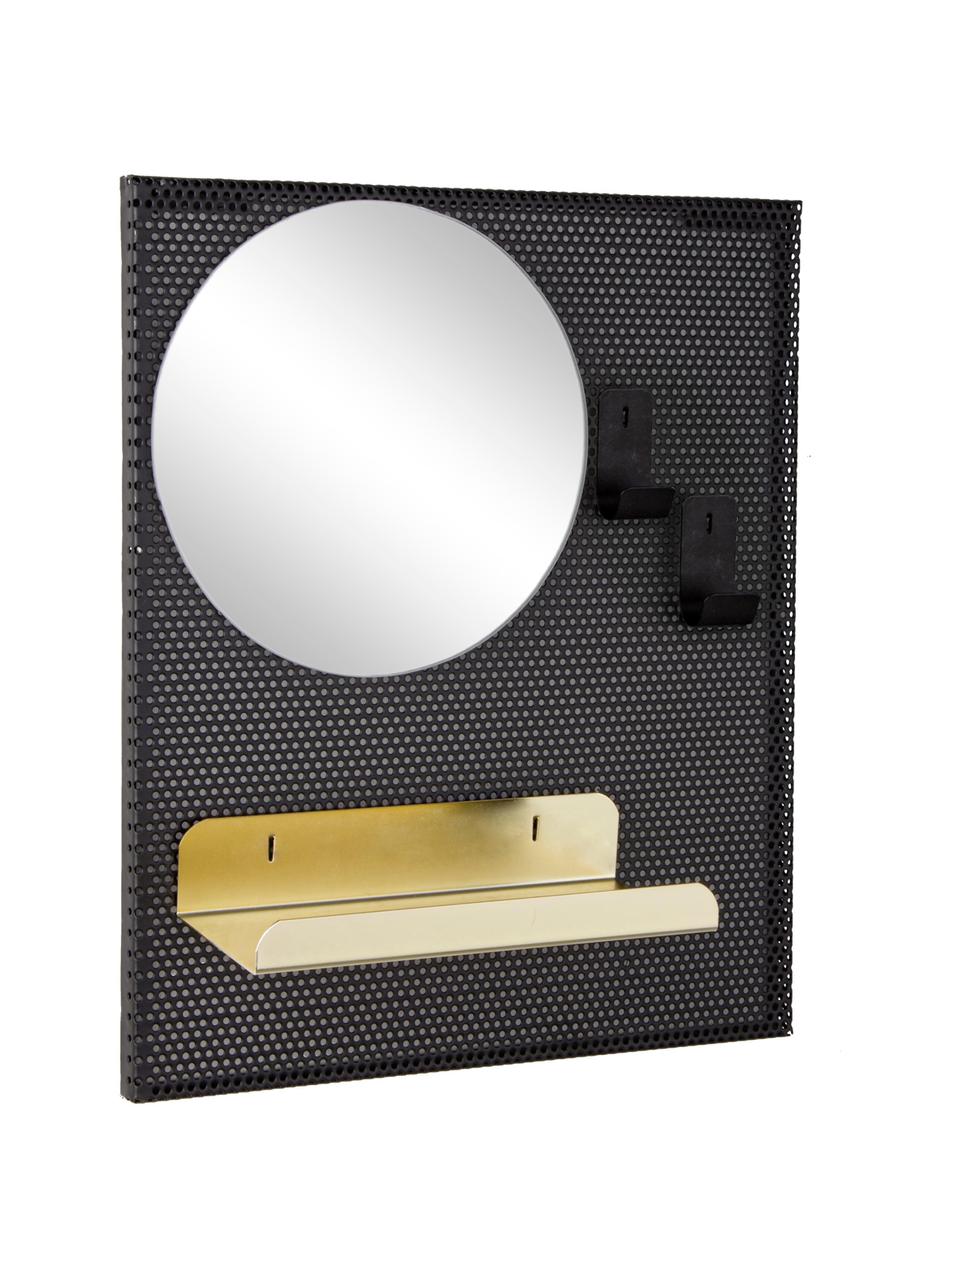 Wandspiegel Metric mit Metallrahmen und Ablagefläche, Spiegelfläche: Spiegelglas, Schwarz, Goldfarben, 31 x 37 cm